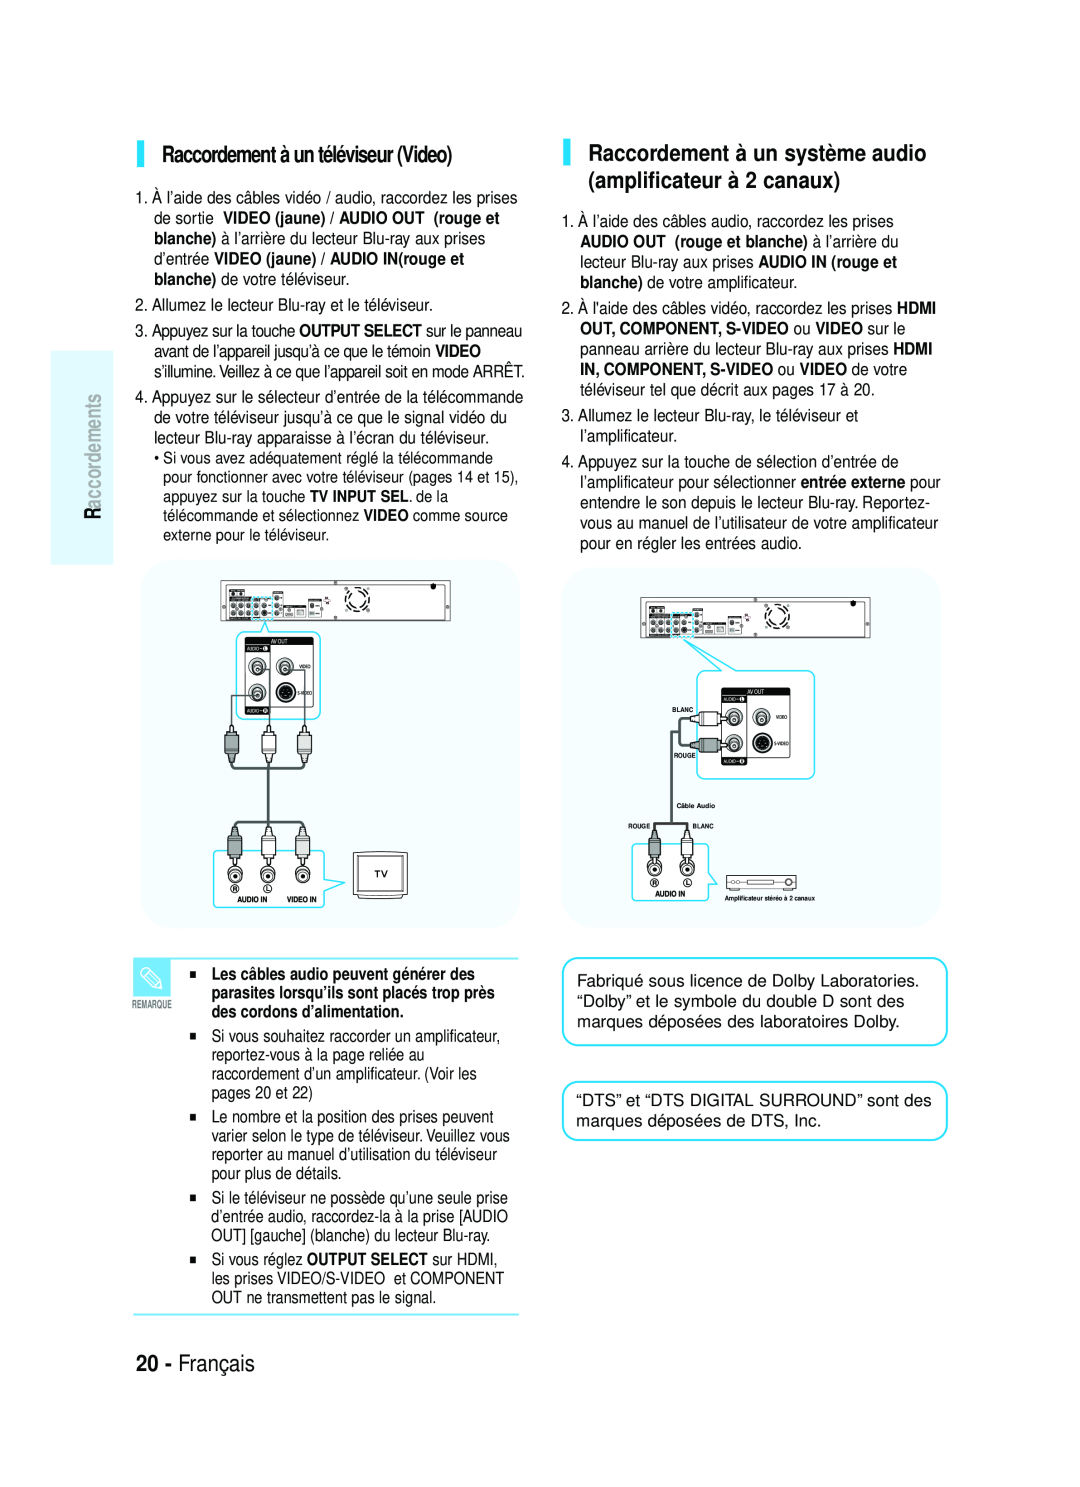 Samsung 1357B-BD-P1200-XAC, AK68-01357B Raccordement à un système audio amplificateur à 2 canaux, Français, Raccordements 